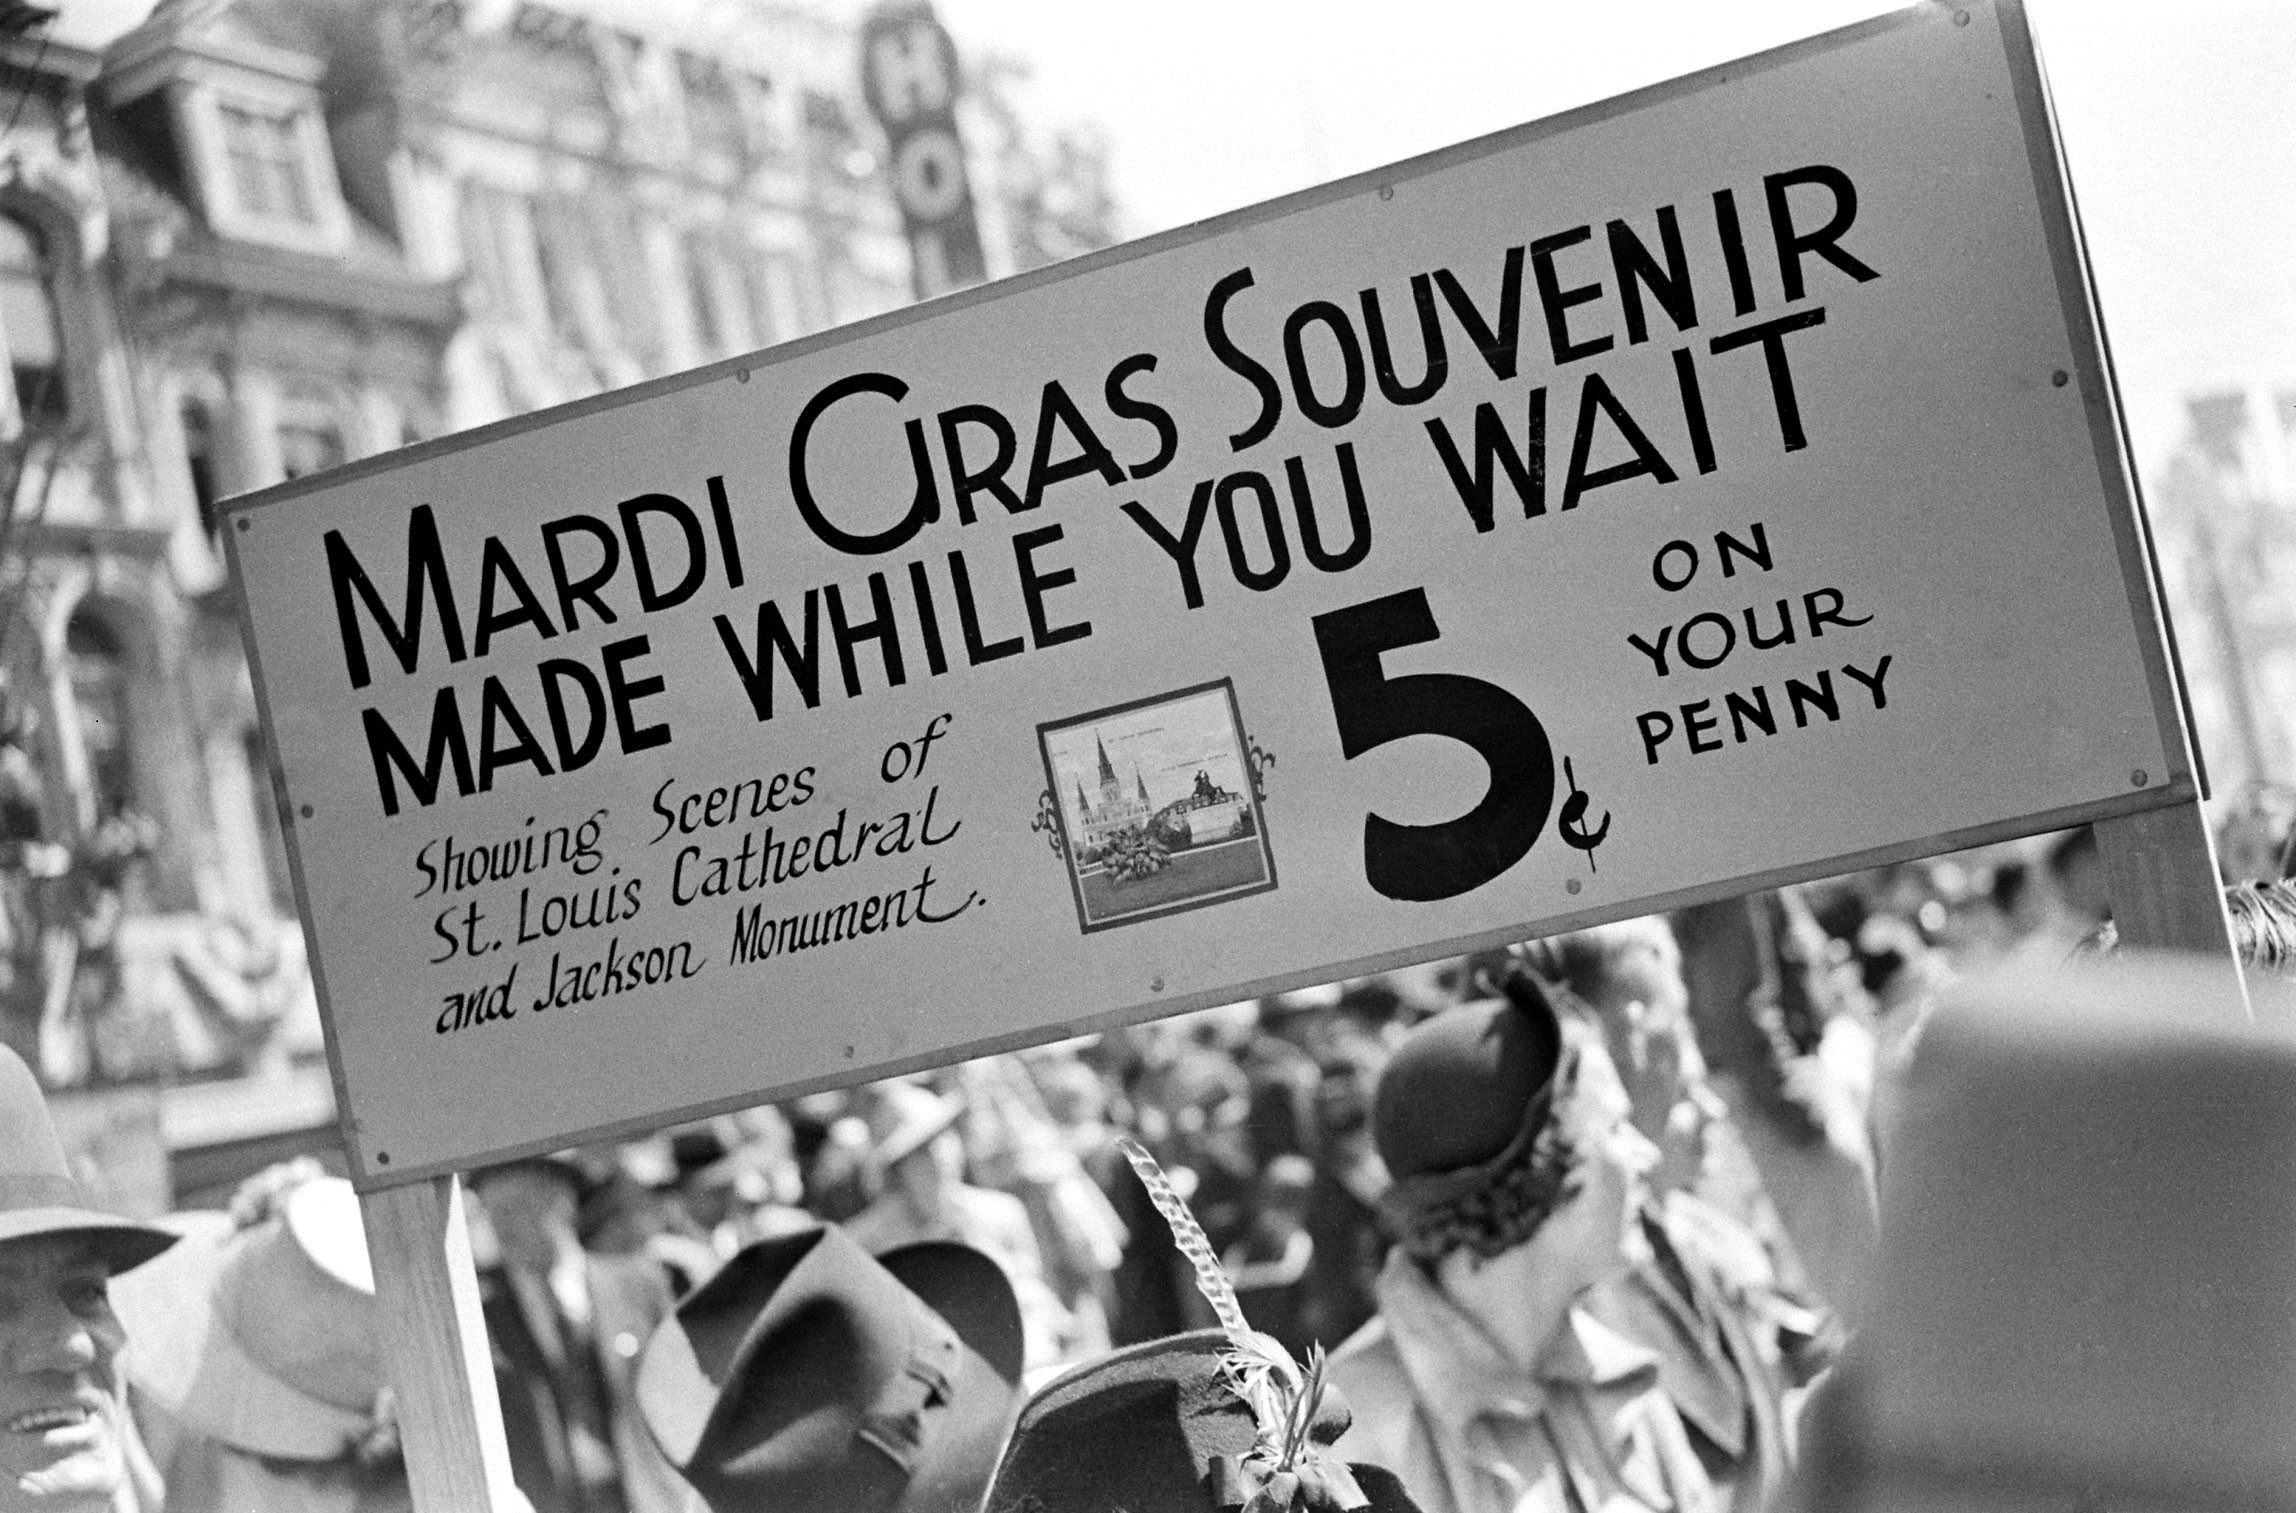 Mardi Gras souvenir sign, 1938.